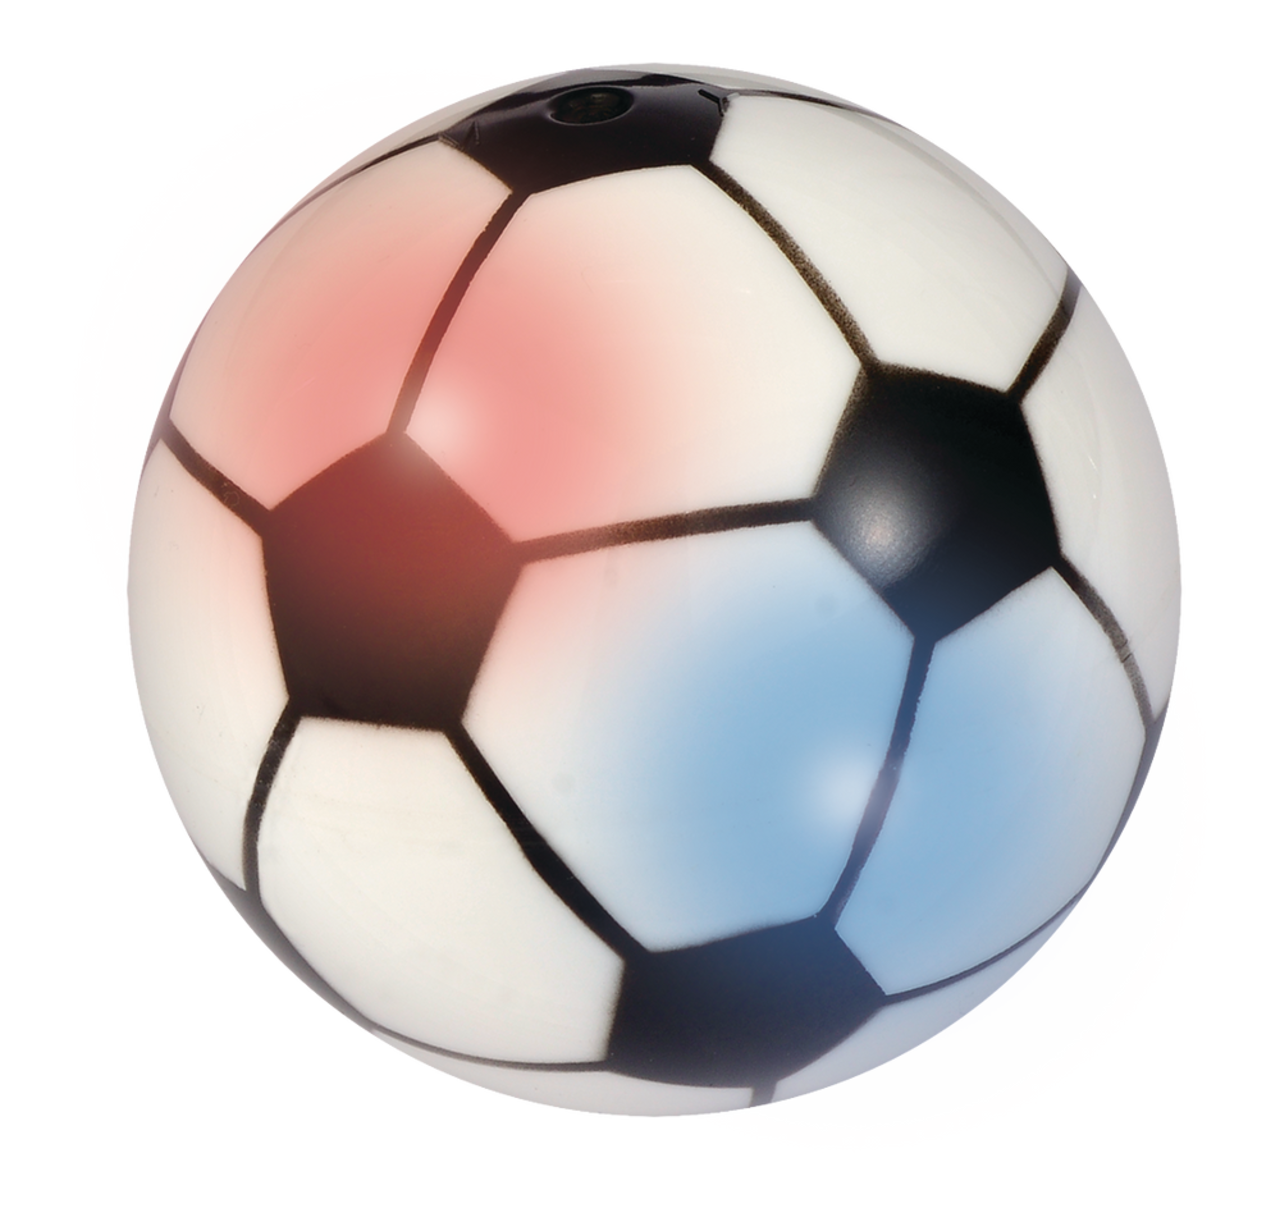 Ballon de football d'intérieur en plastique, 1 pièce, petit format